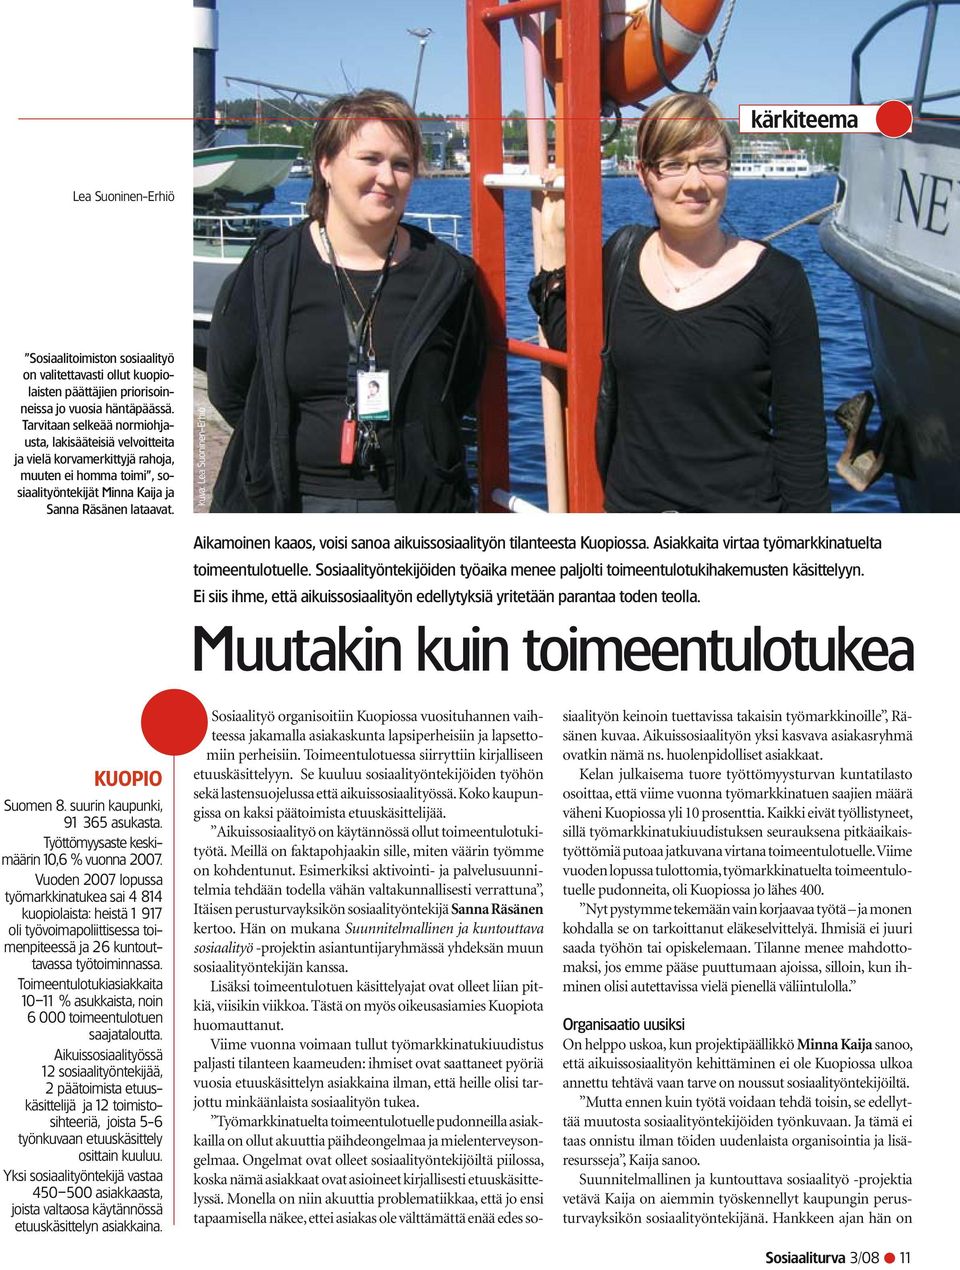 kuva: Lea Suoninen-Erhiö Aikamoinen kaaos, voisi sanoa aikuissosiaalityön tilanteesta Kuopiossa. Asiakkaita virtaa työmarkkinatuelta toimeentulotuelle.